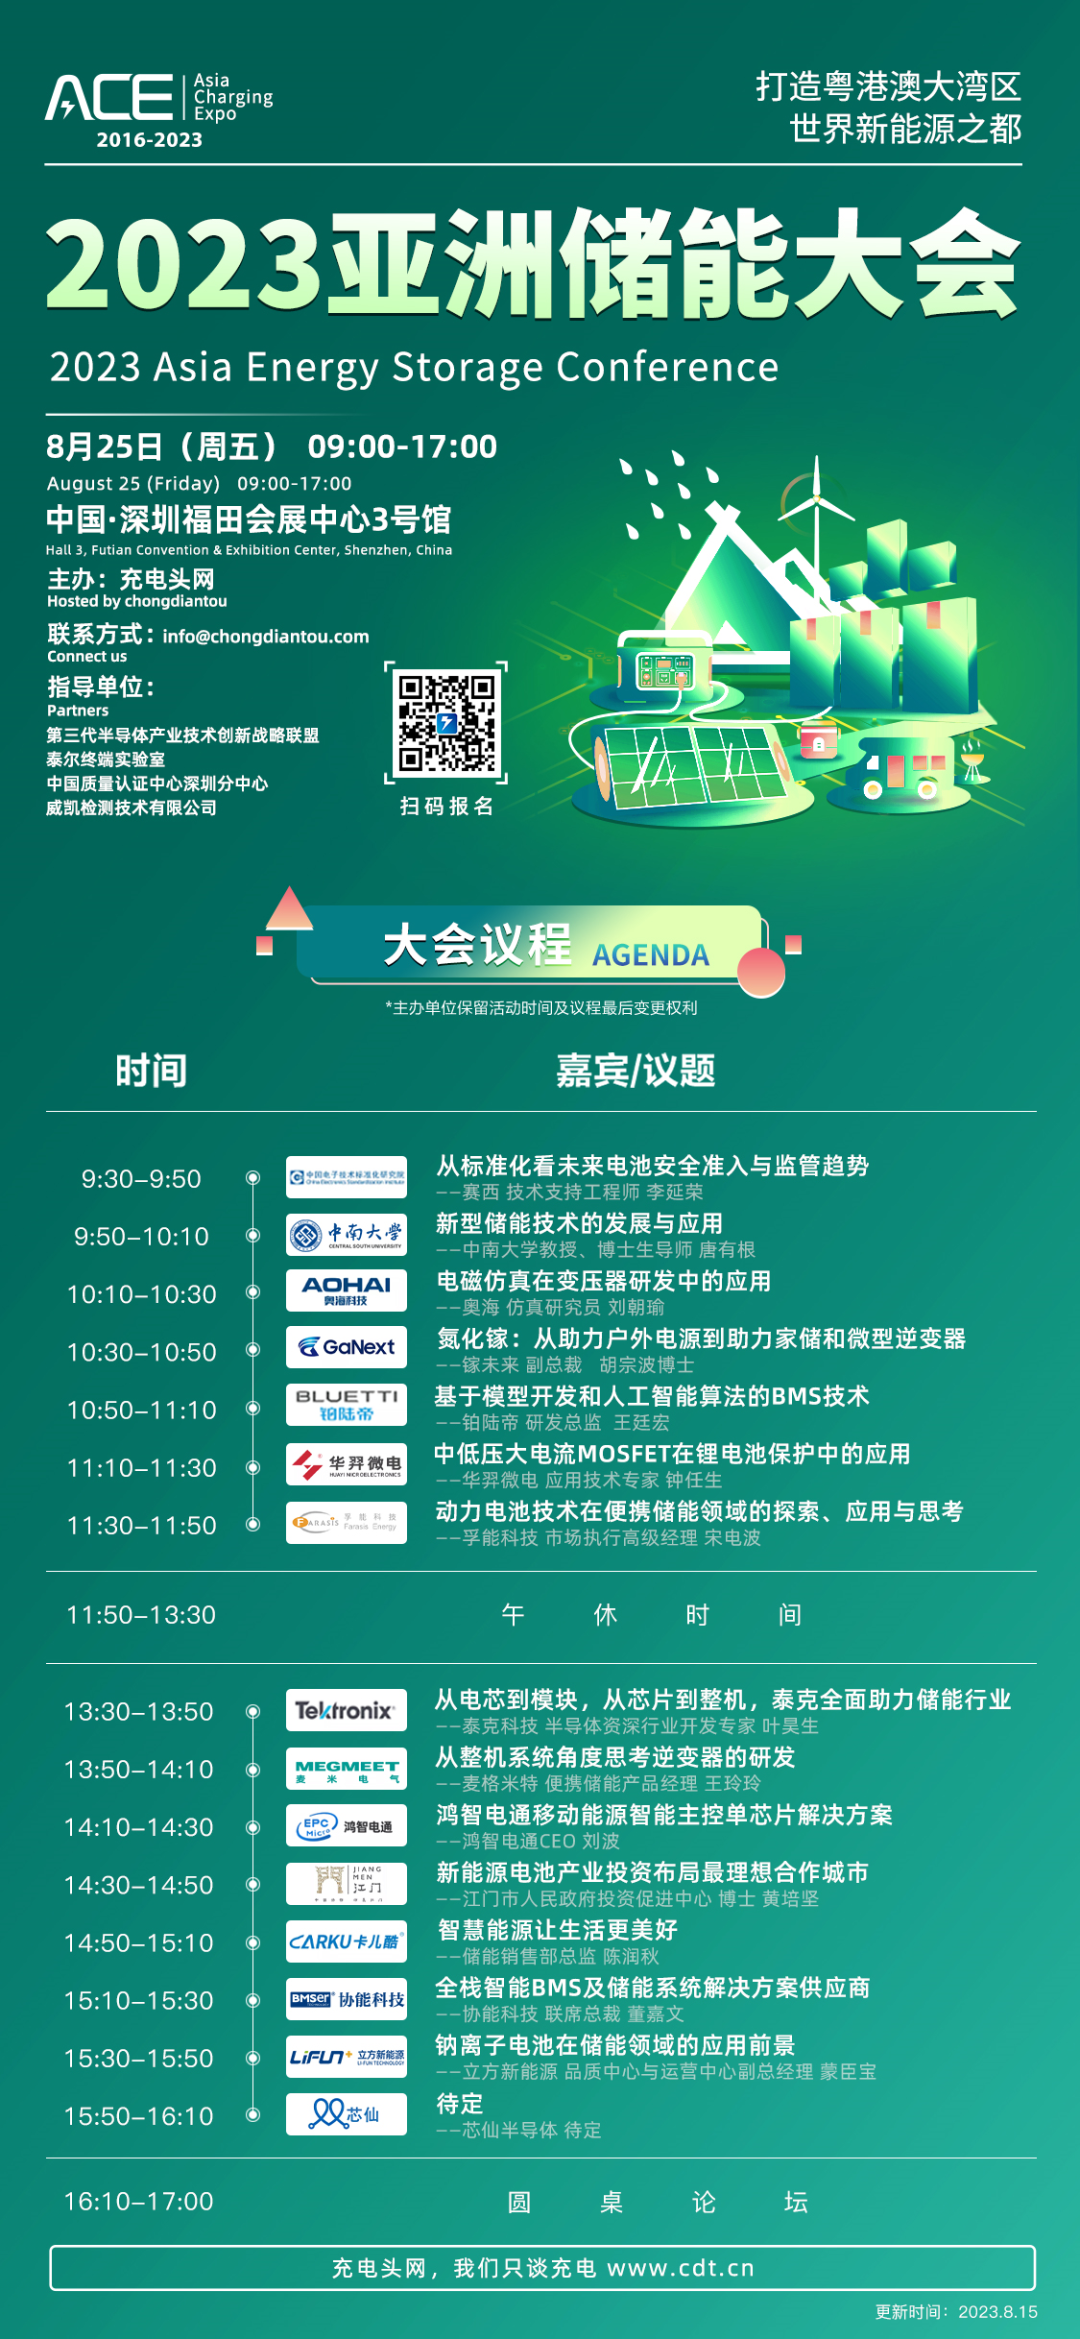 2023亚洲储能大会8月25日在深圳举办，15位大咖发表演讲-亚洲充电展